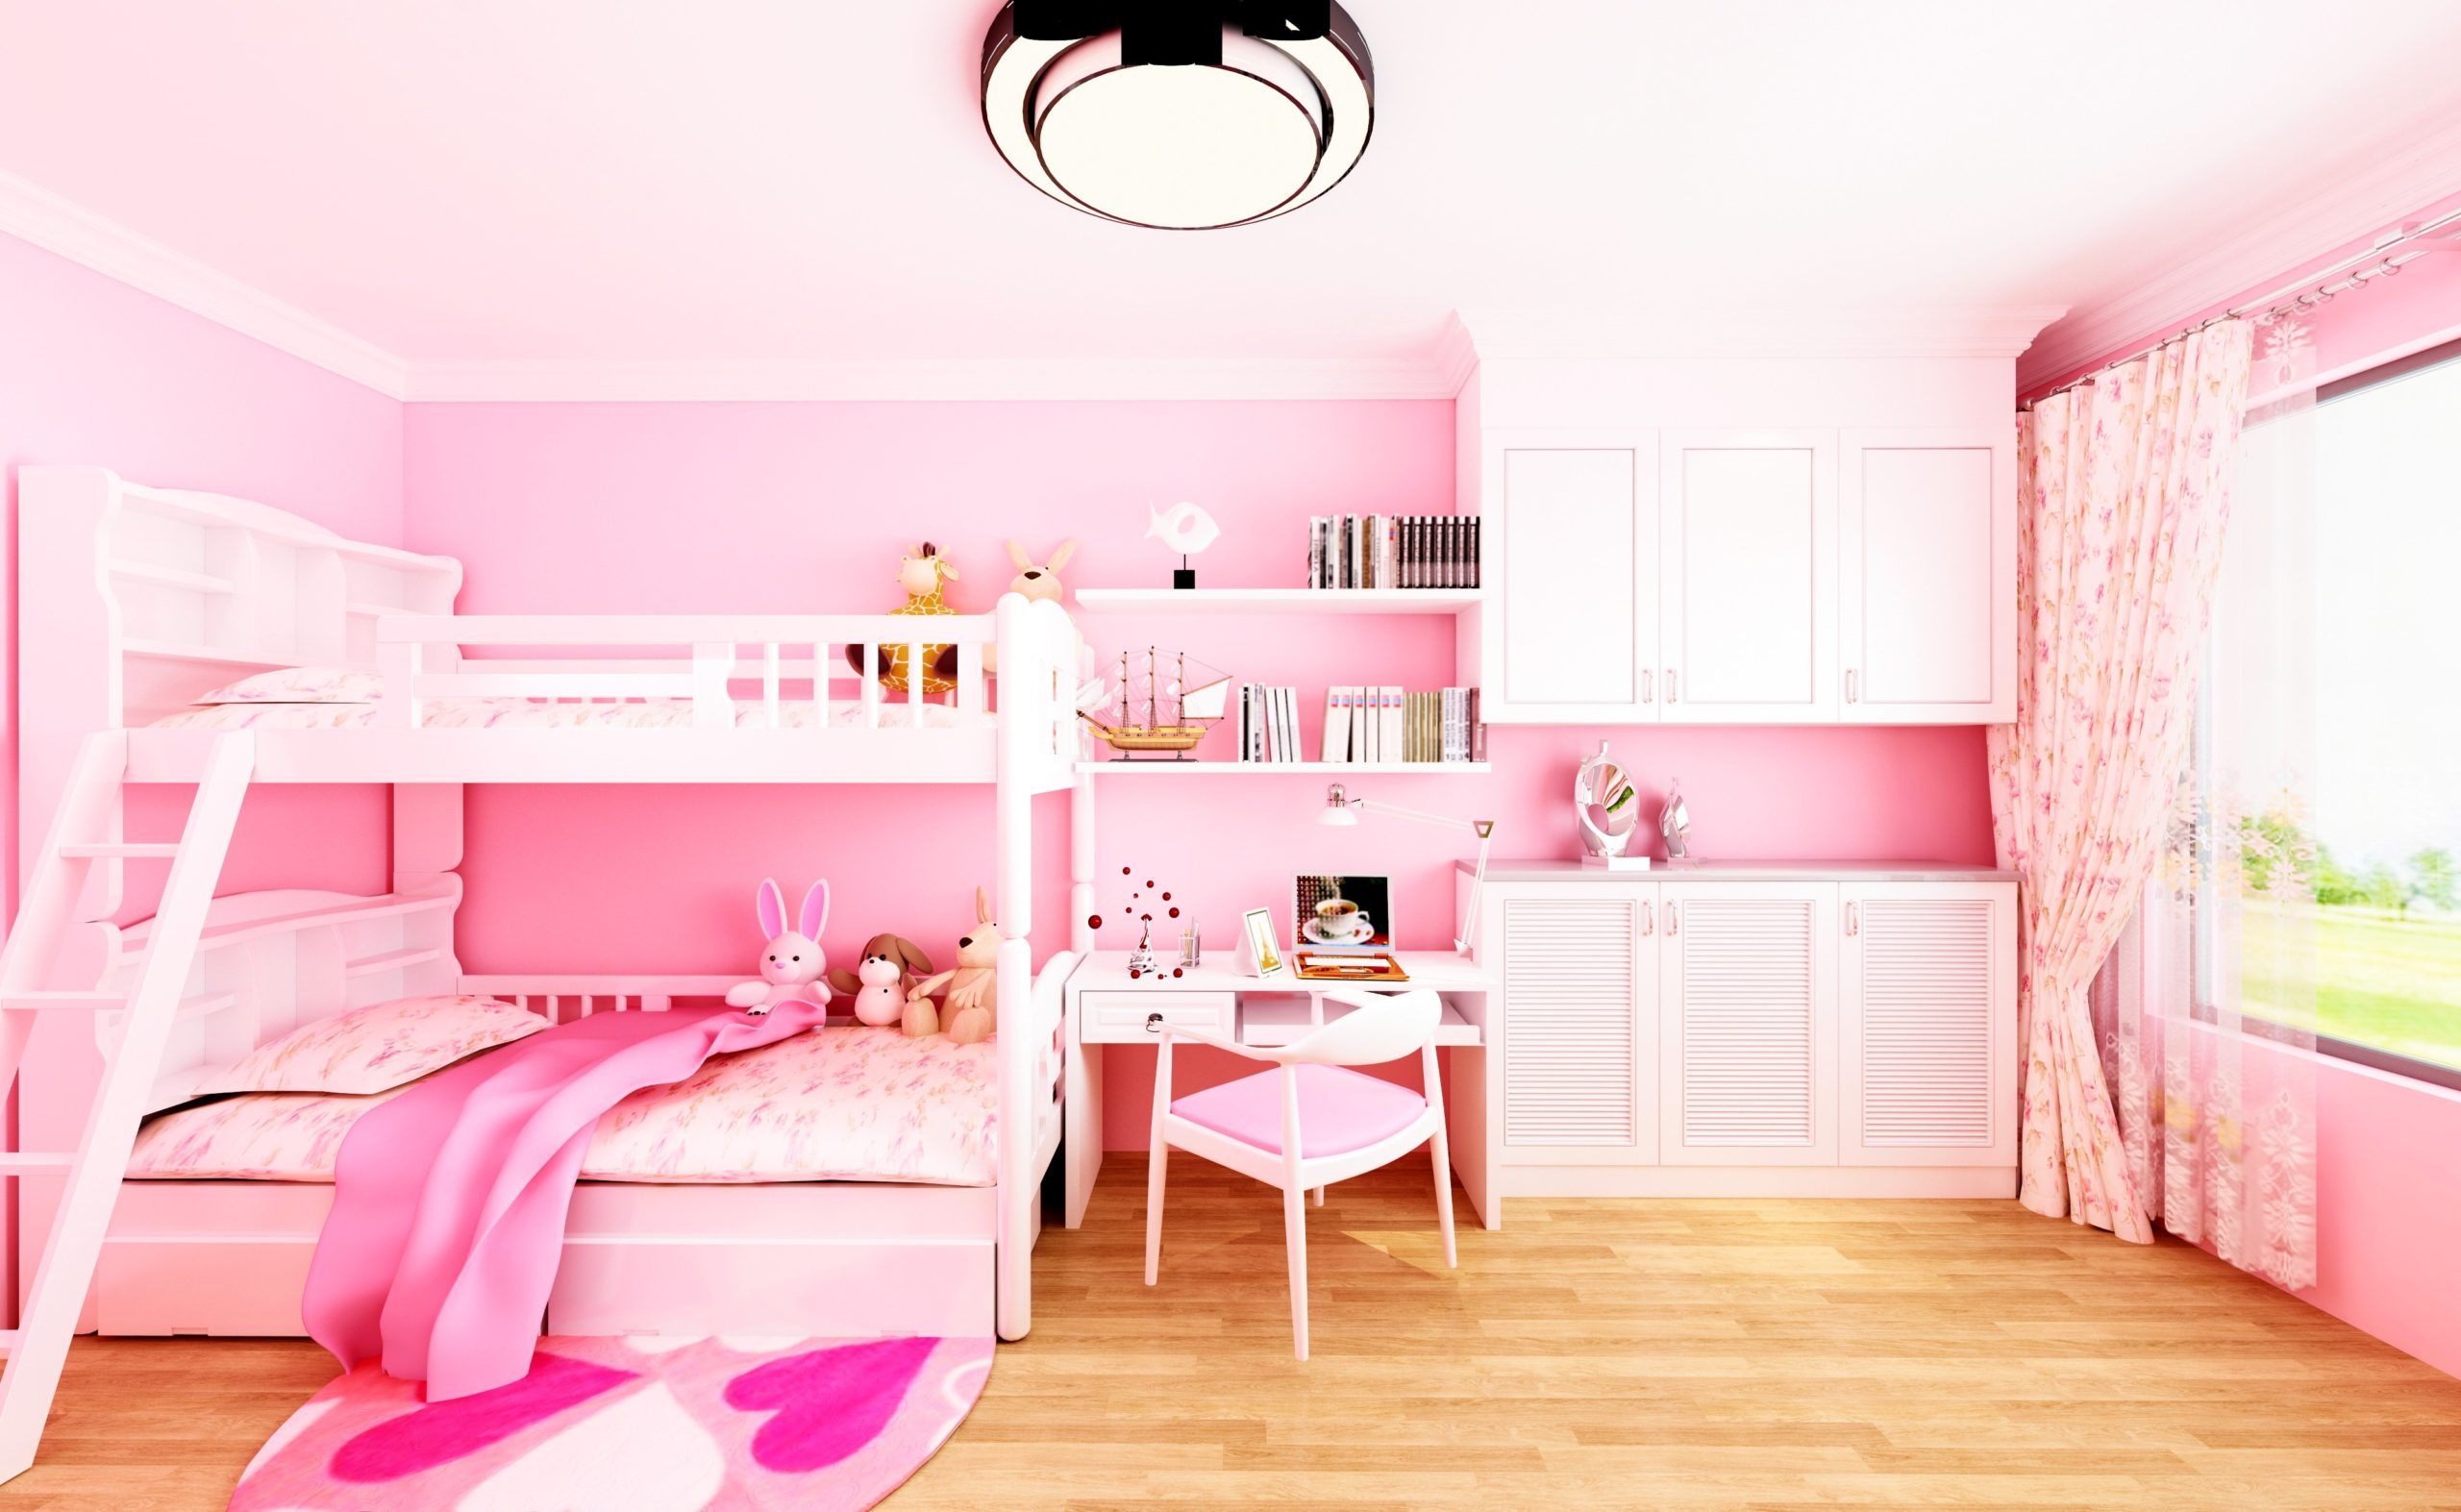 <img src="kids.jpg" alt="kids pink bedroom bring colour to home"/> 